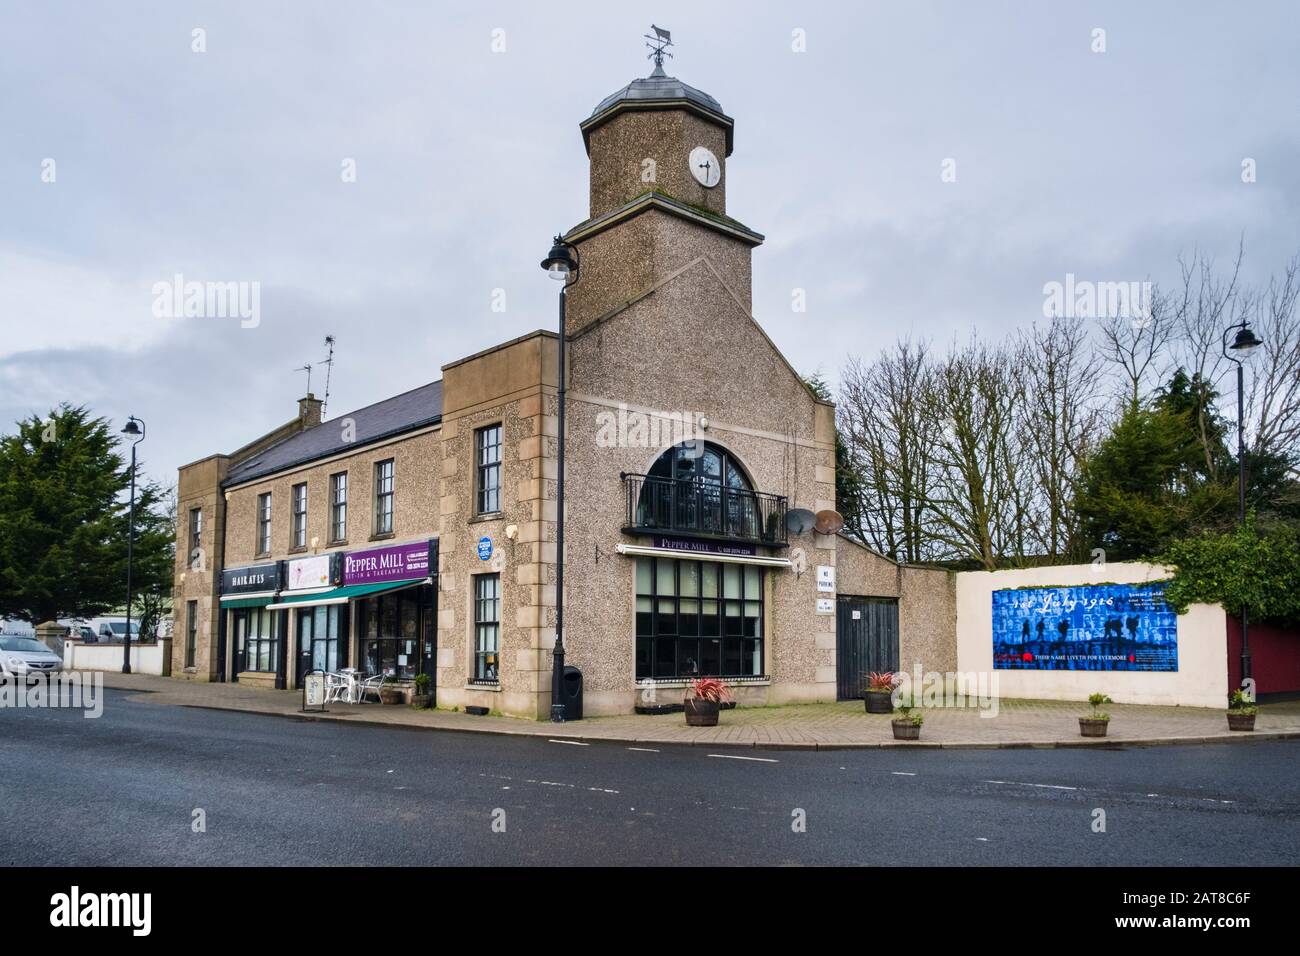 L'ancienne Maison du marché maintenant Co-op Community Building dans le village de Dervock Comté d'Antrim Irlande du Nord Banque D'Images